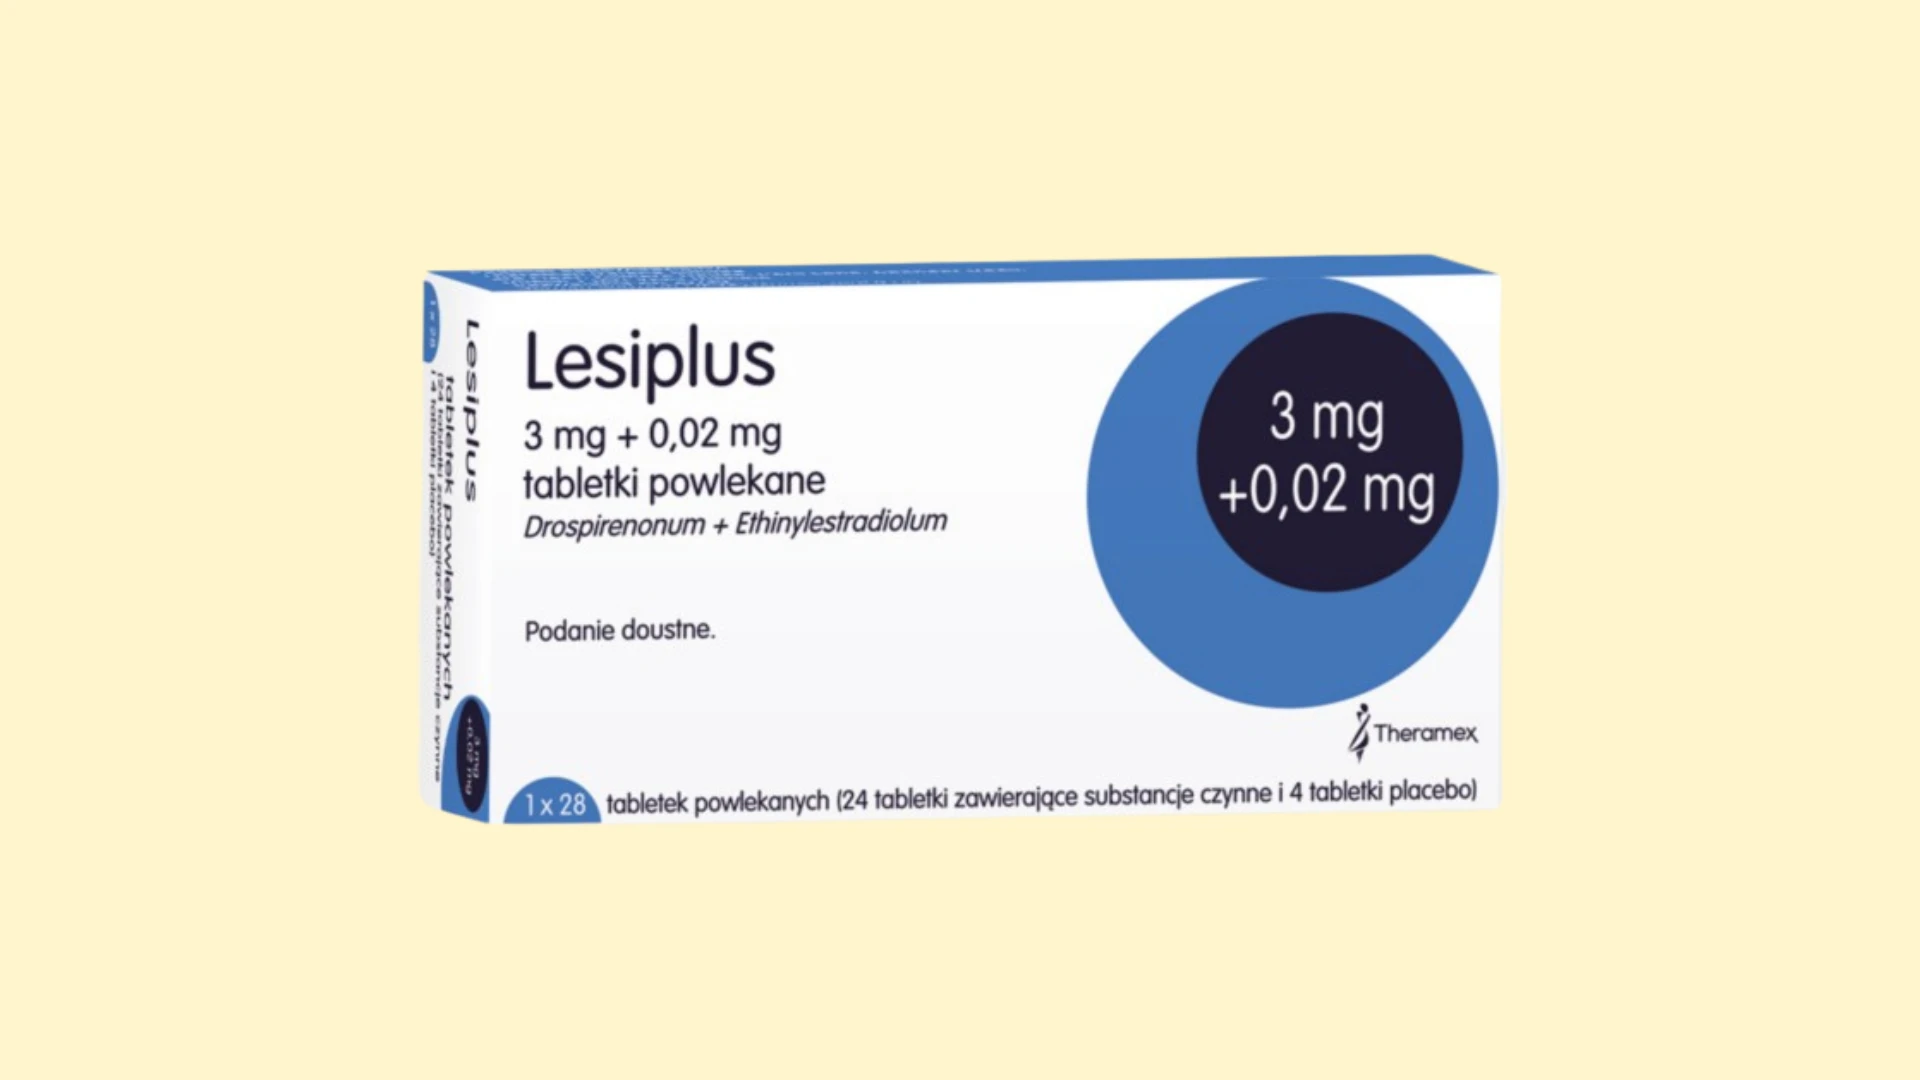 Lesiplus - E-recepta - recepta online z konsultacją | cena, dawkowanie, przeciwwskazania